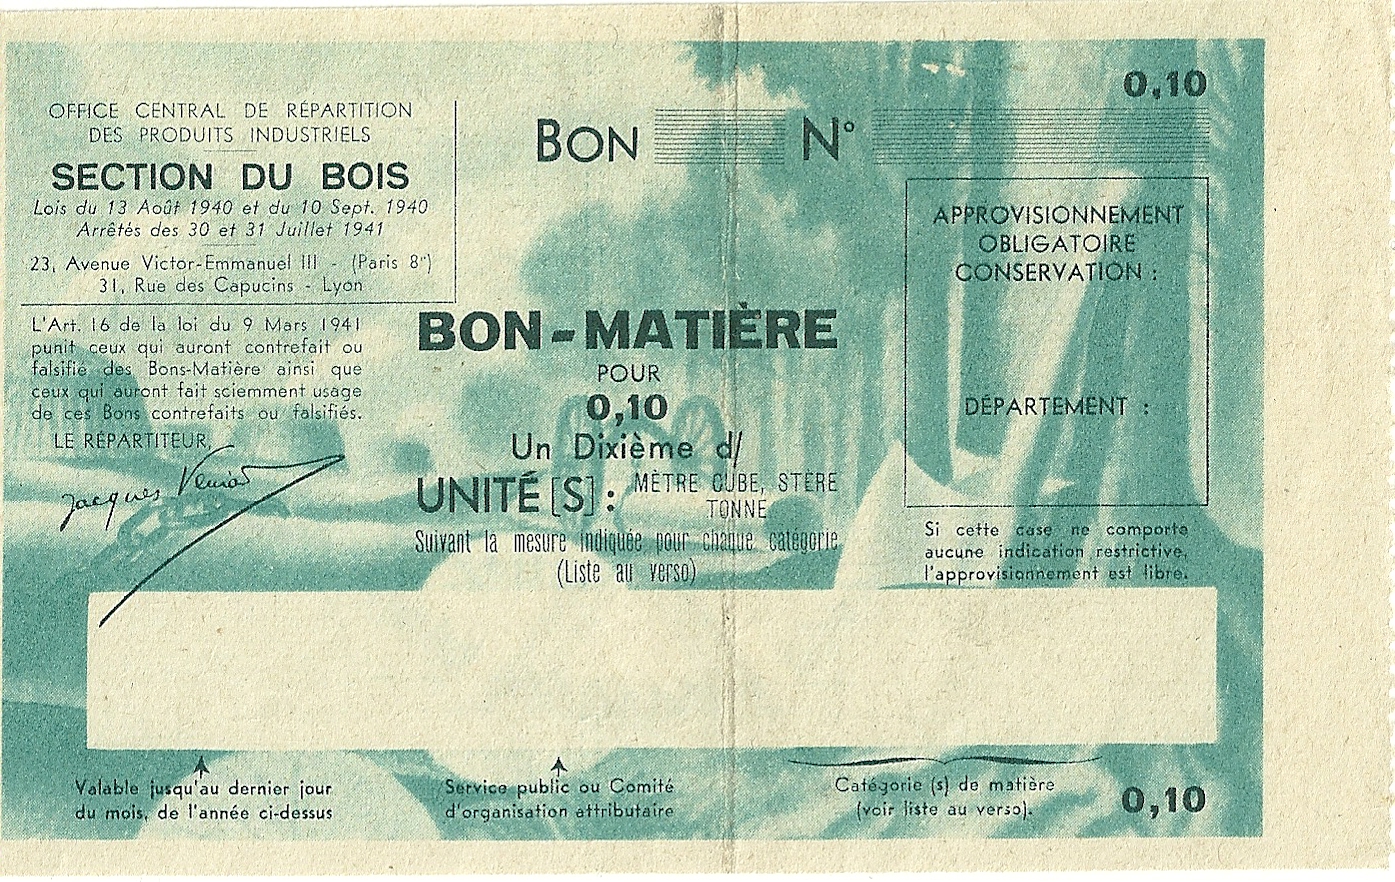 SECTION DU BOIS - BON-MATIERE POUR 0,10 Un Dixième d'UNITE - S-NMR